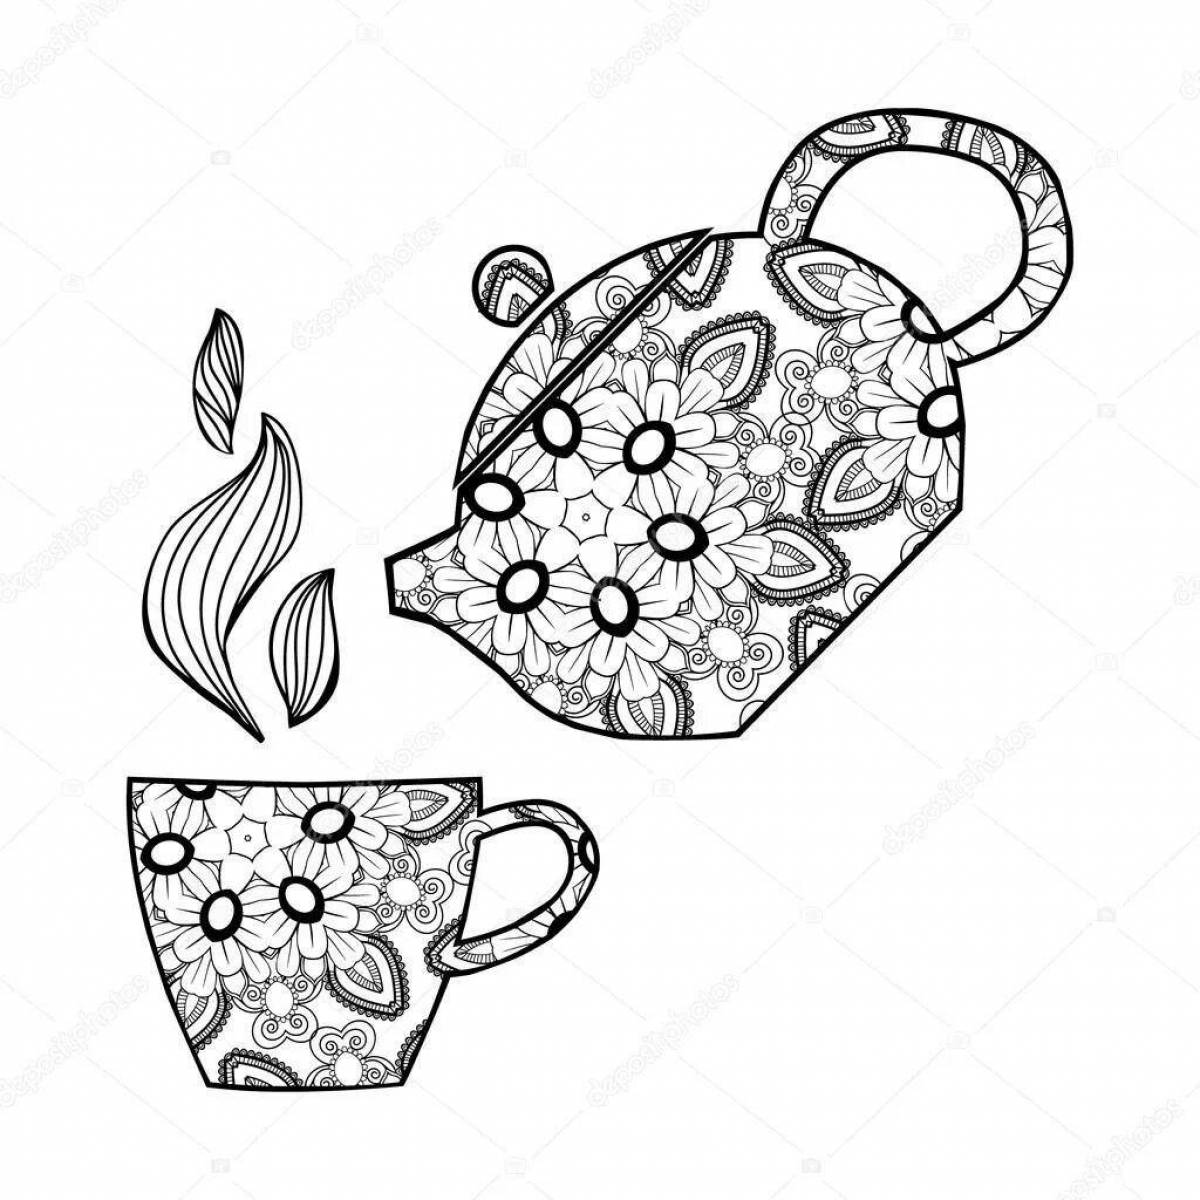 Animated teapot and mug coloring page